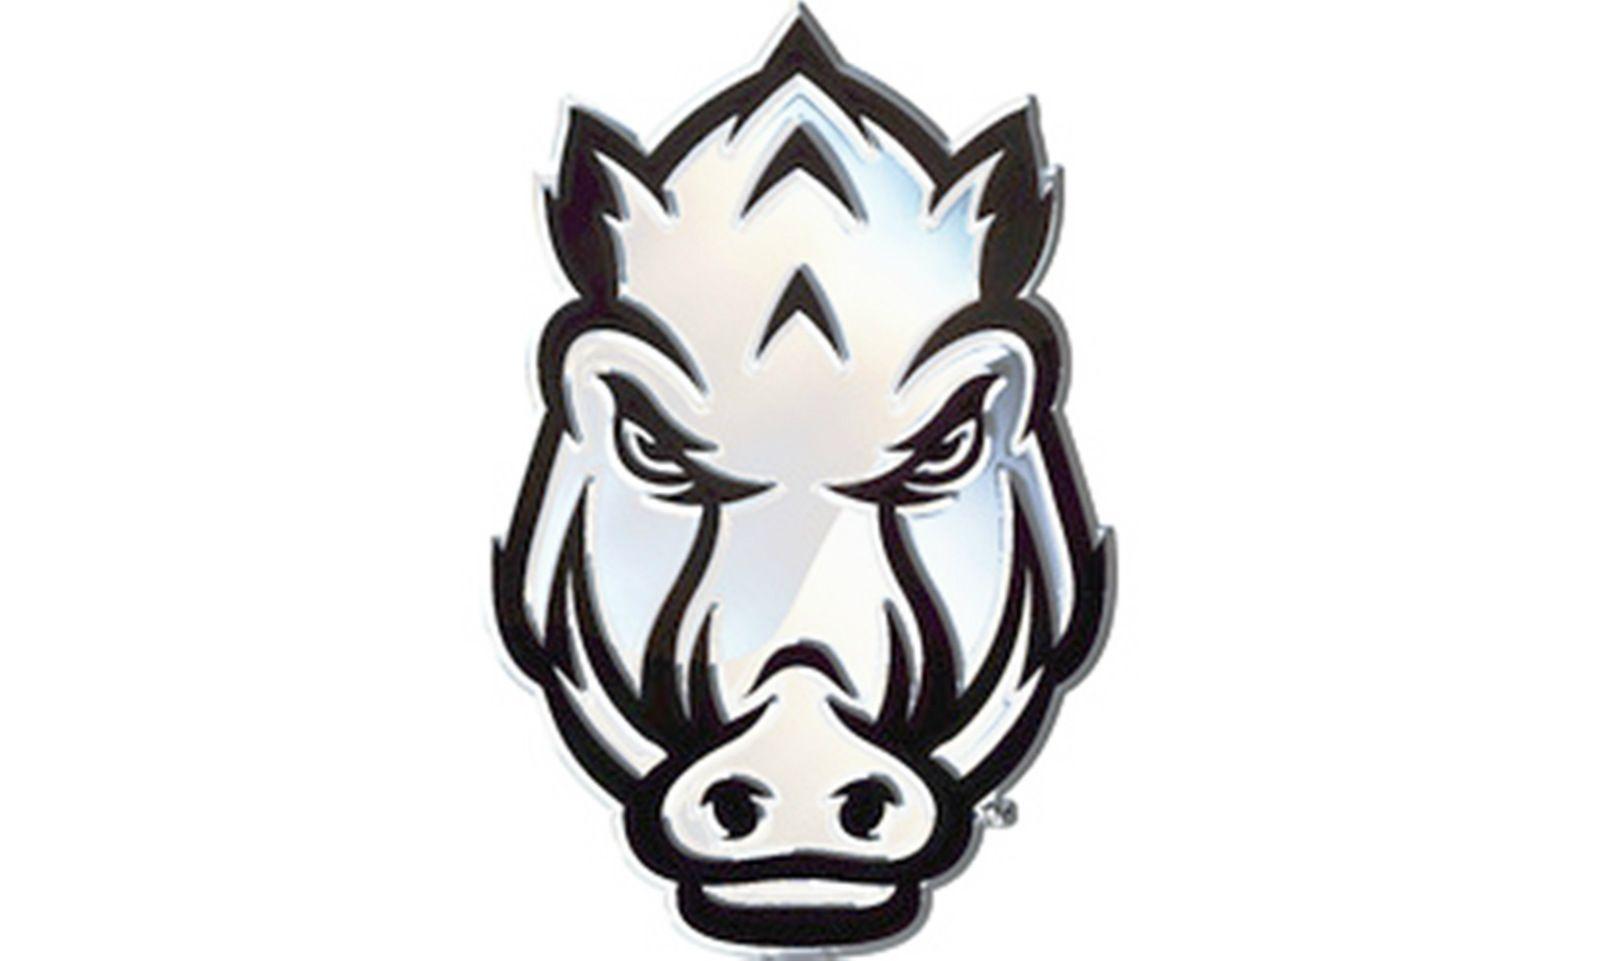 Hog Face Logo - Arkansas Razorbacks SpEd HOG FACE SD76299 Metal Chrome Auto Emblem